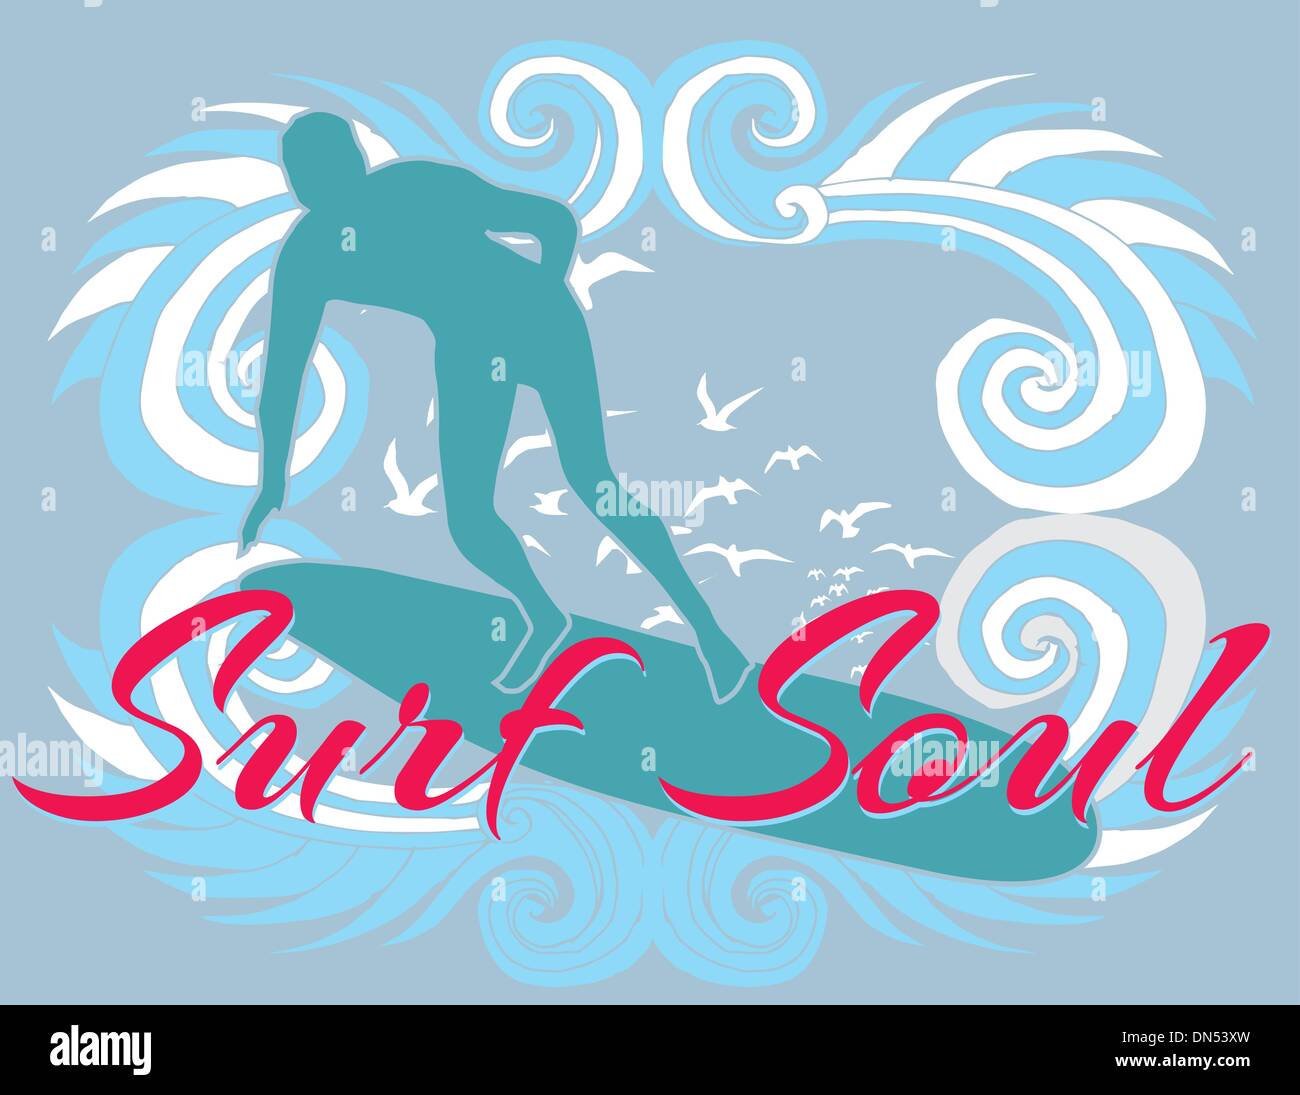 Pacific surfer vector graphic design Illustrazione Vettoriale